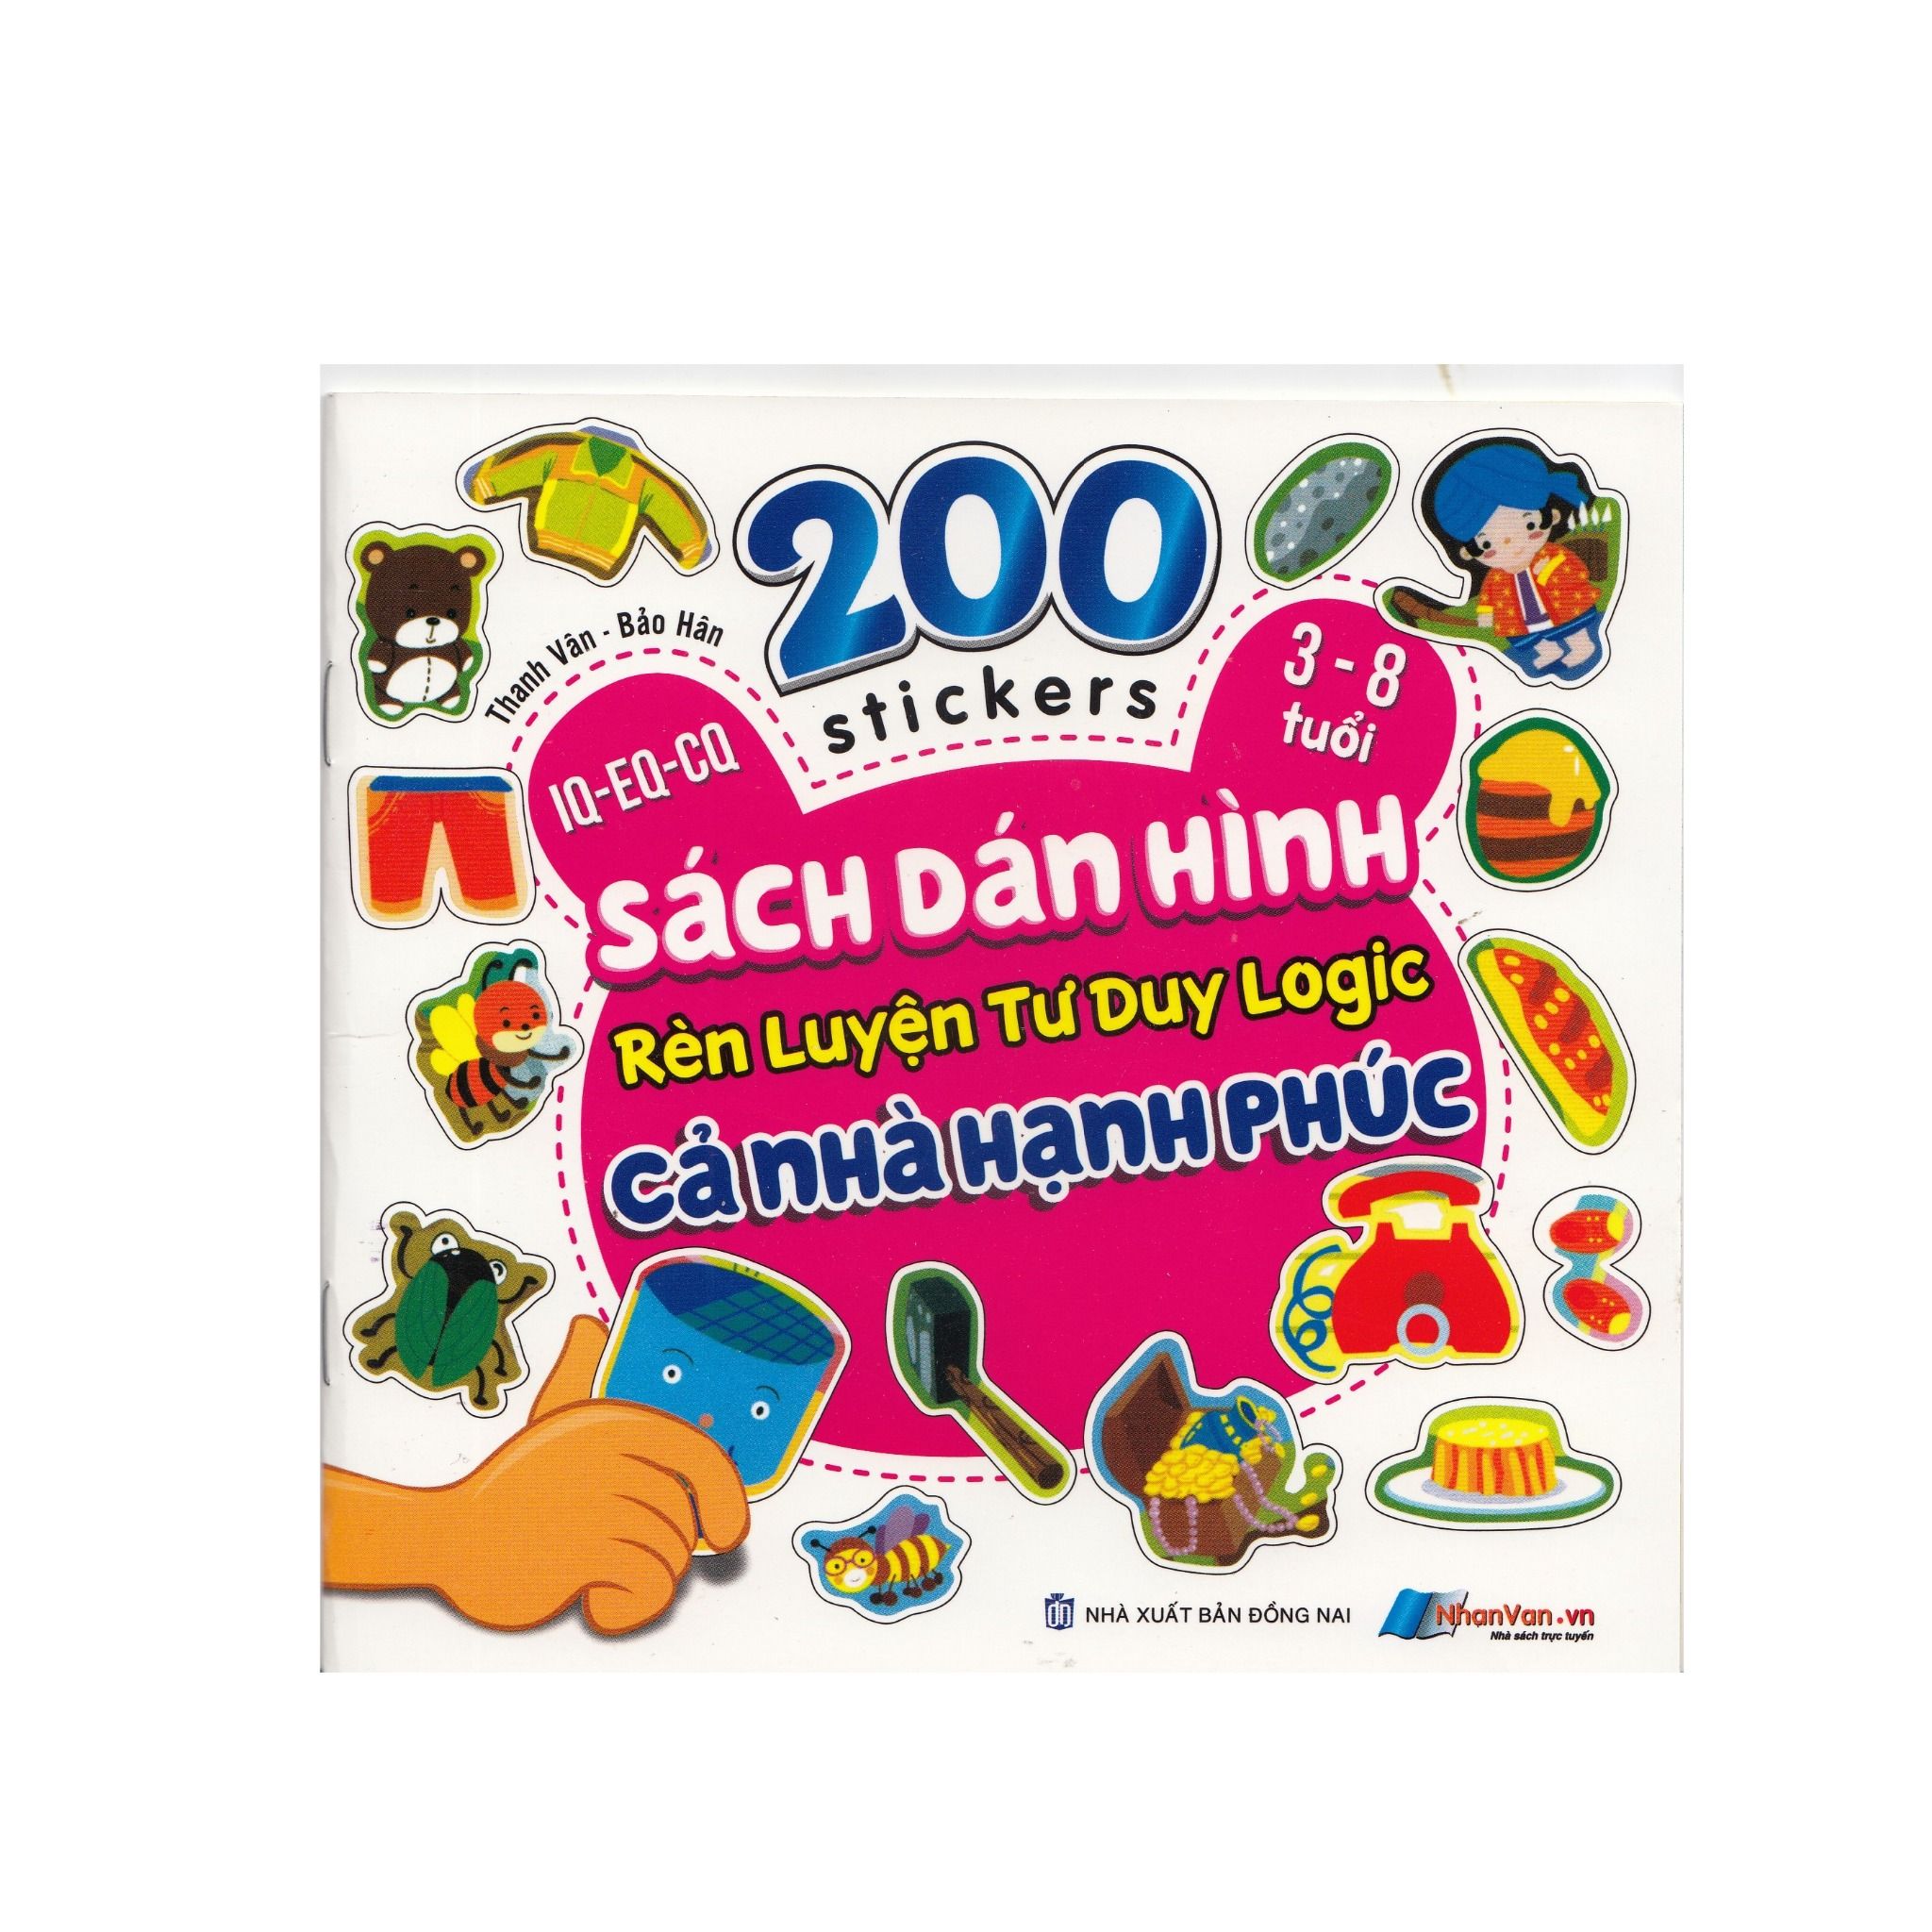  200 Stickers - 3-8 Tuổi - Sách Dán Hình Rèn Luyện Tư Duy Logic - Cả Nhà Hạnh Phúc 